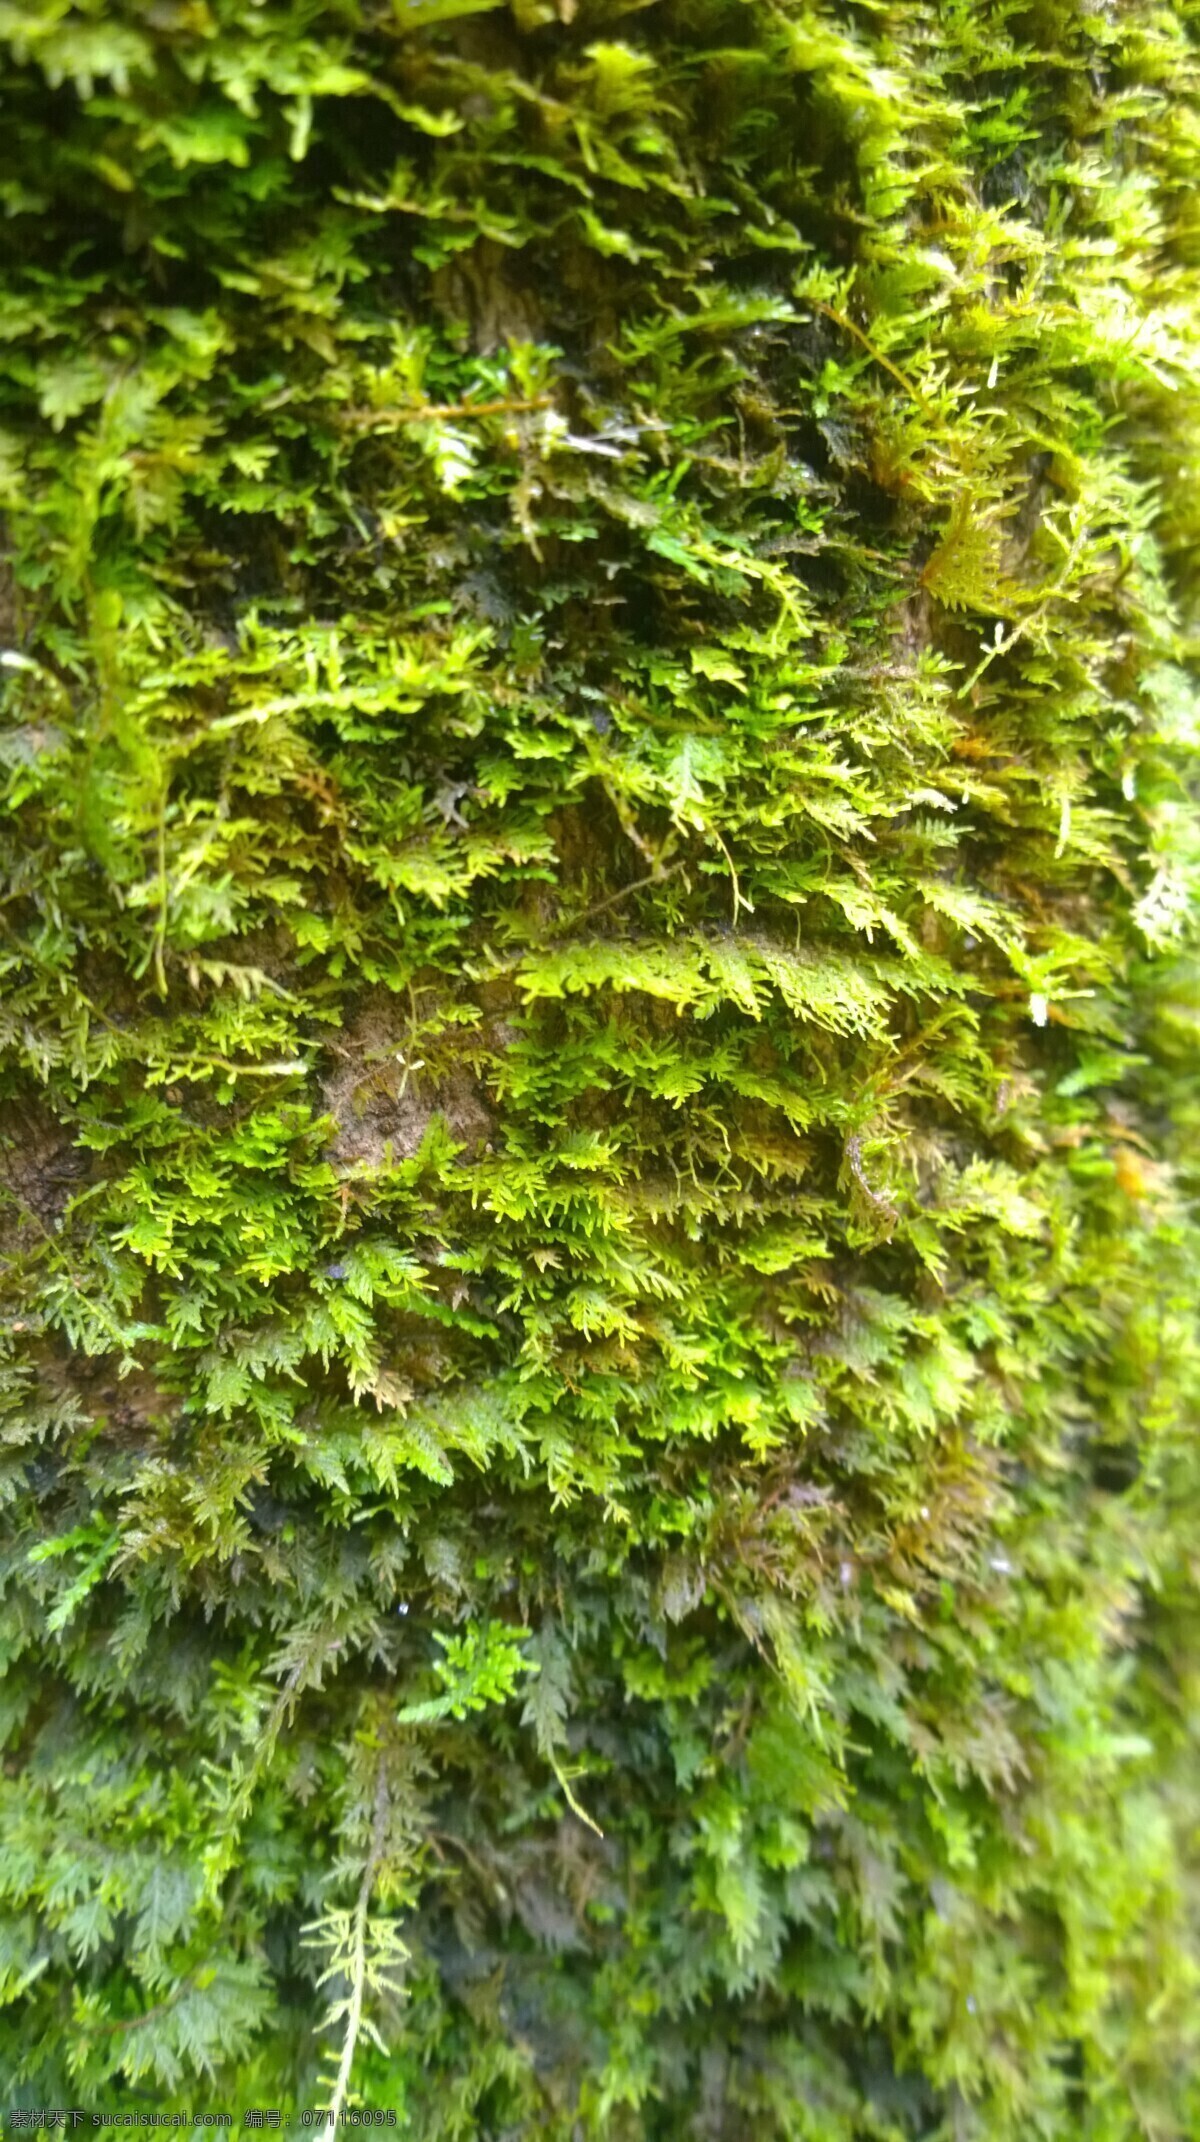 附树青苔 青苔 苔藓 初春 潮湿 附着 松树 树干 翠云草 植物 生物世界 花草